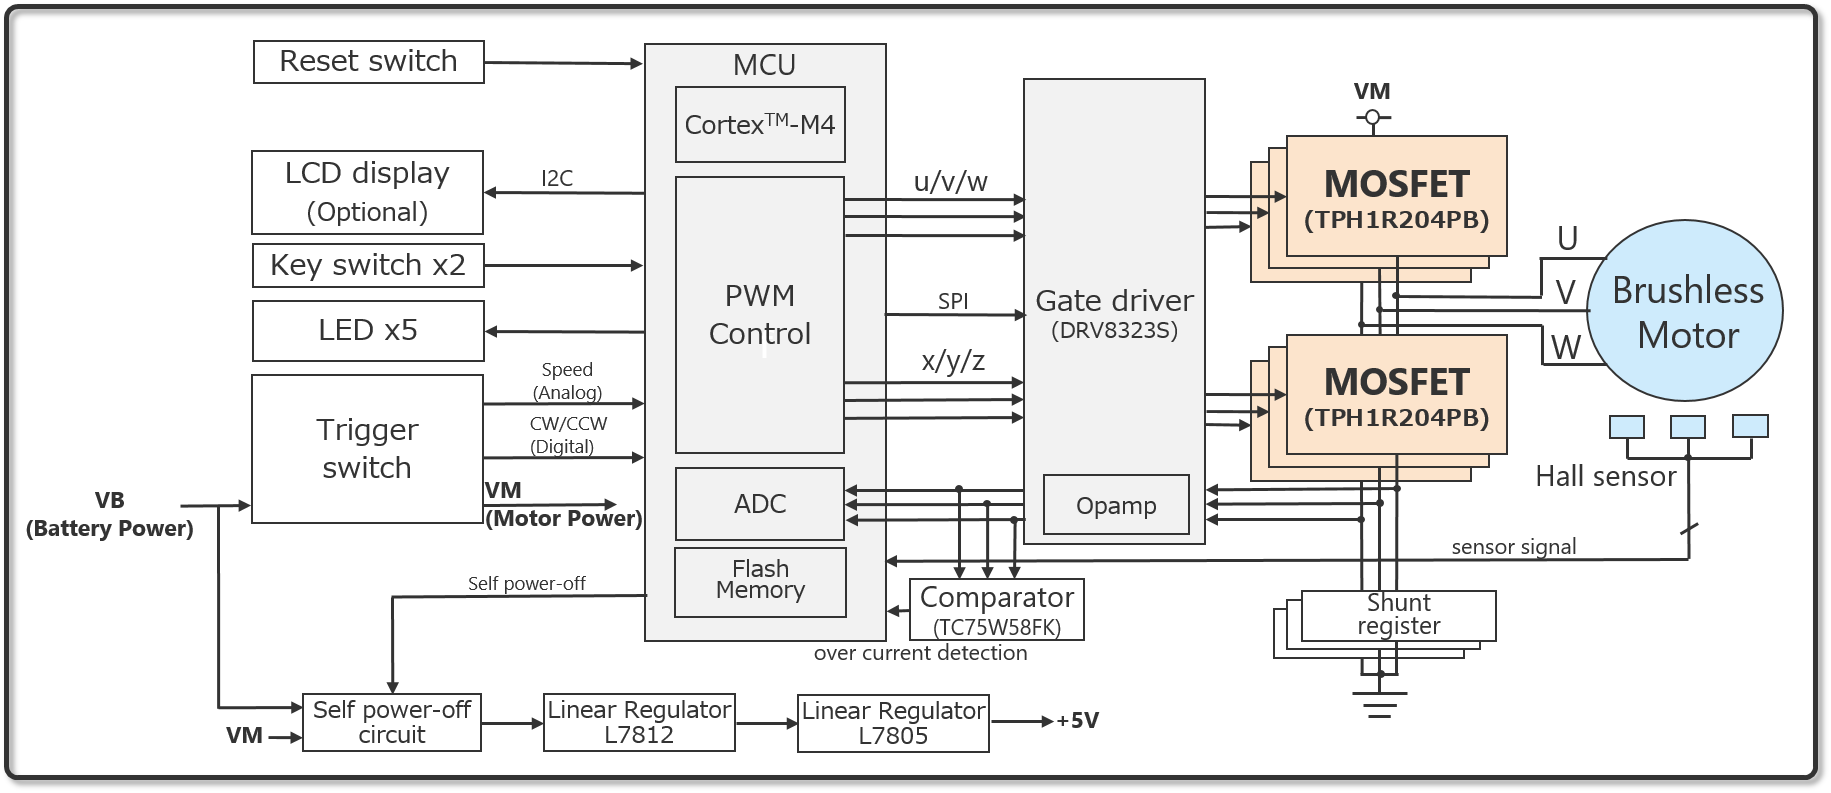 これは、コードレス電動工具向けモーター駆動回路の回路図です。